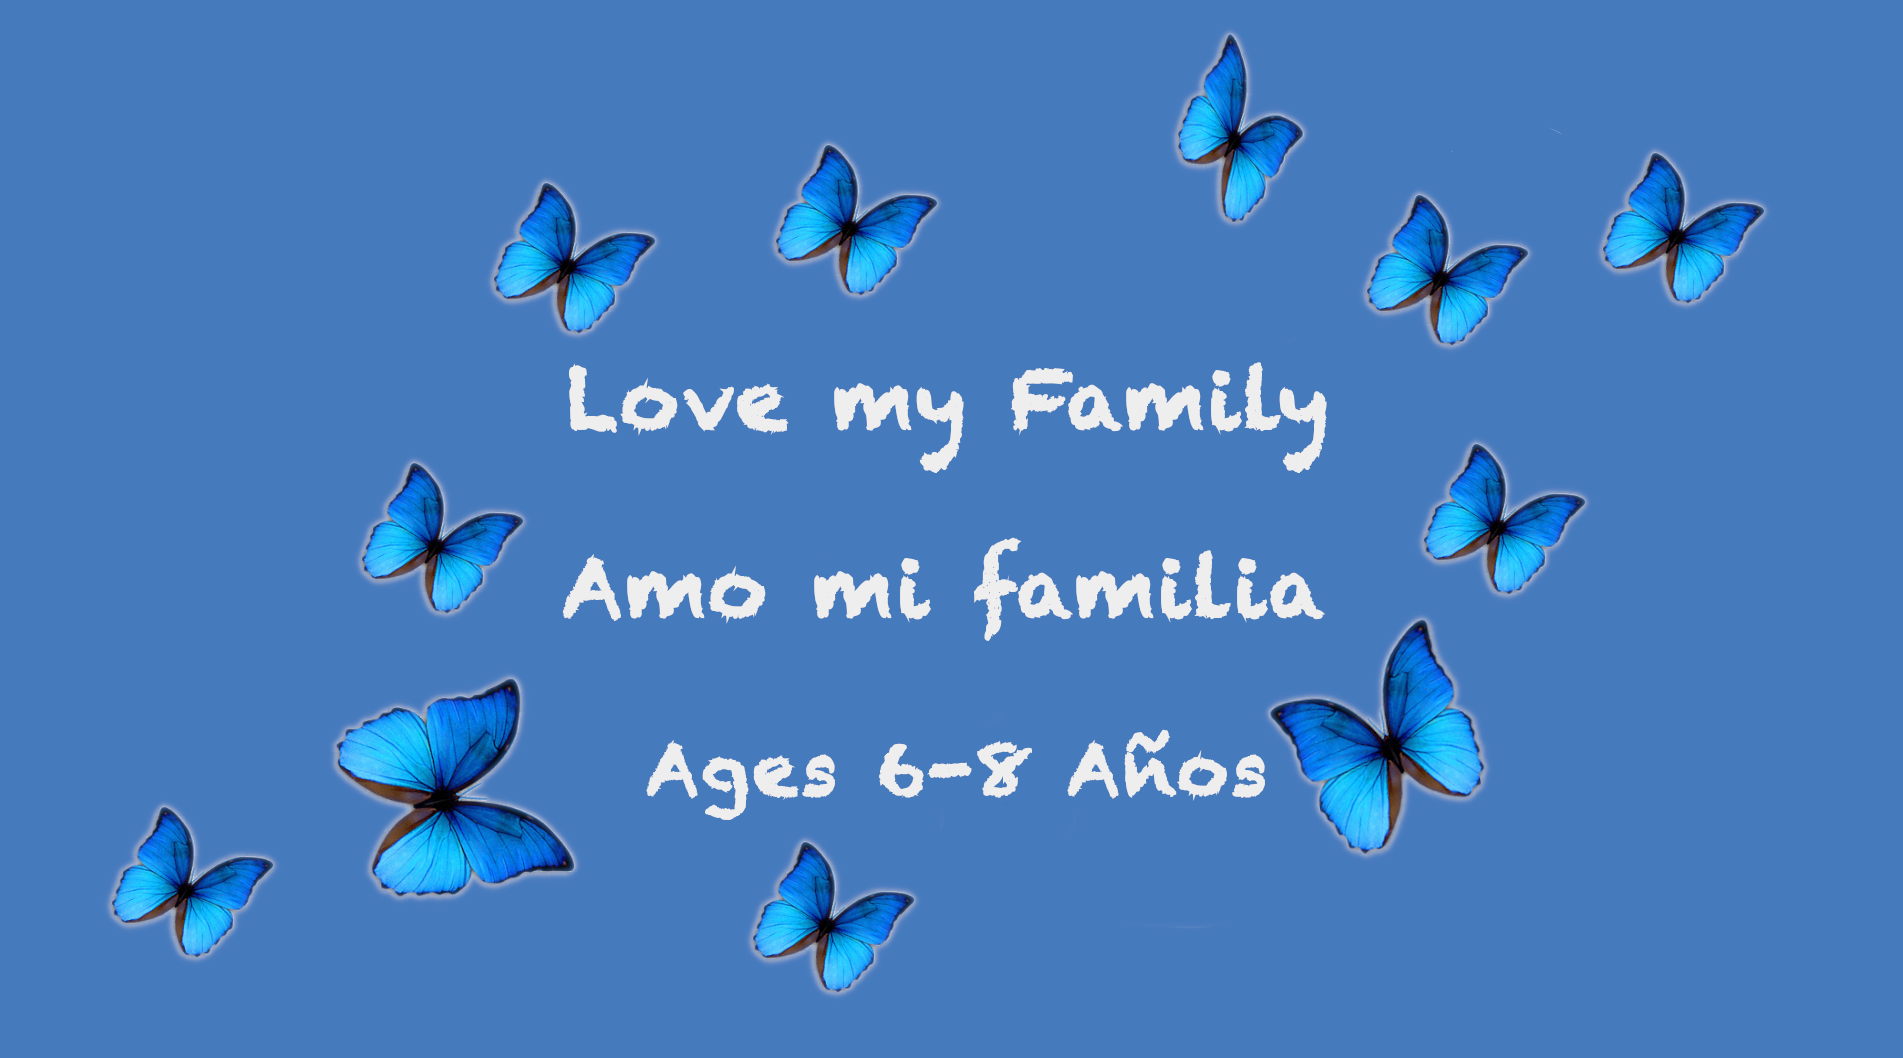 Love My Family para niños de 6 a 8 años